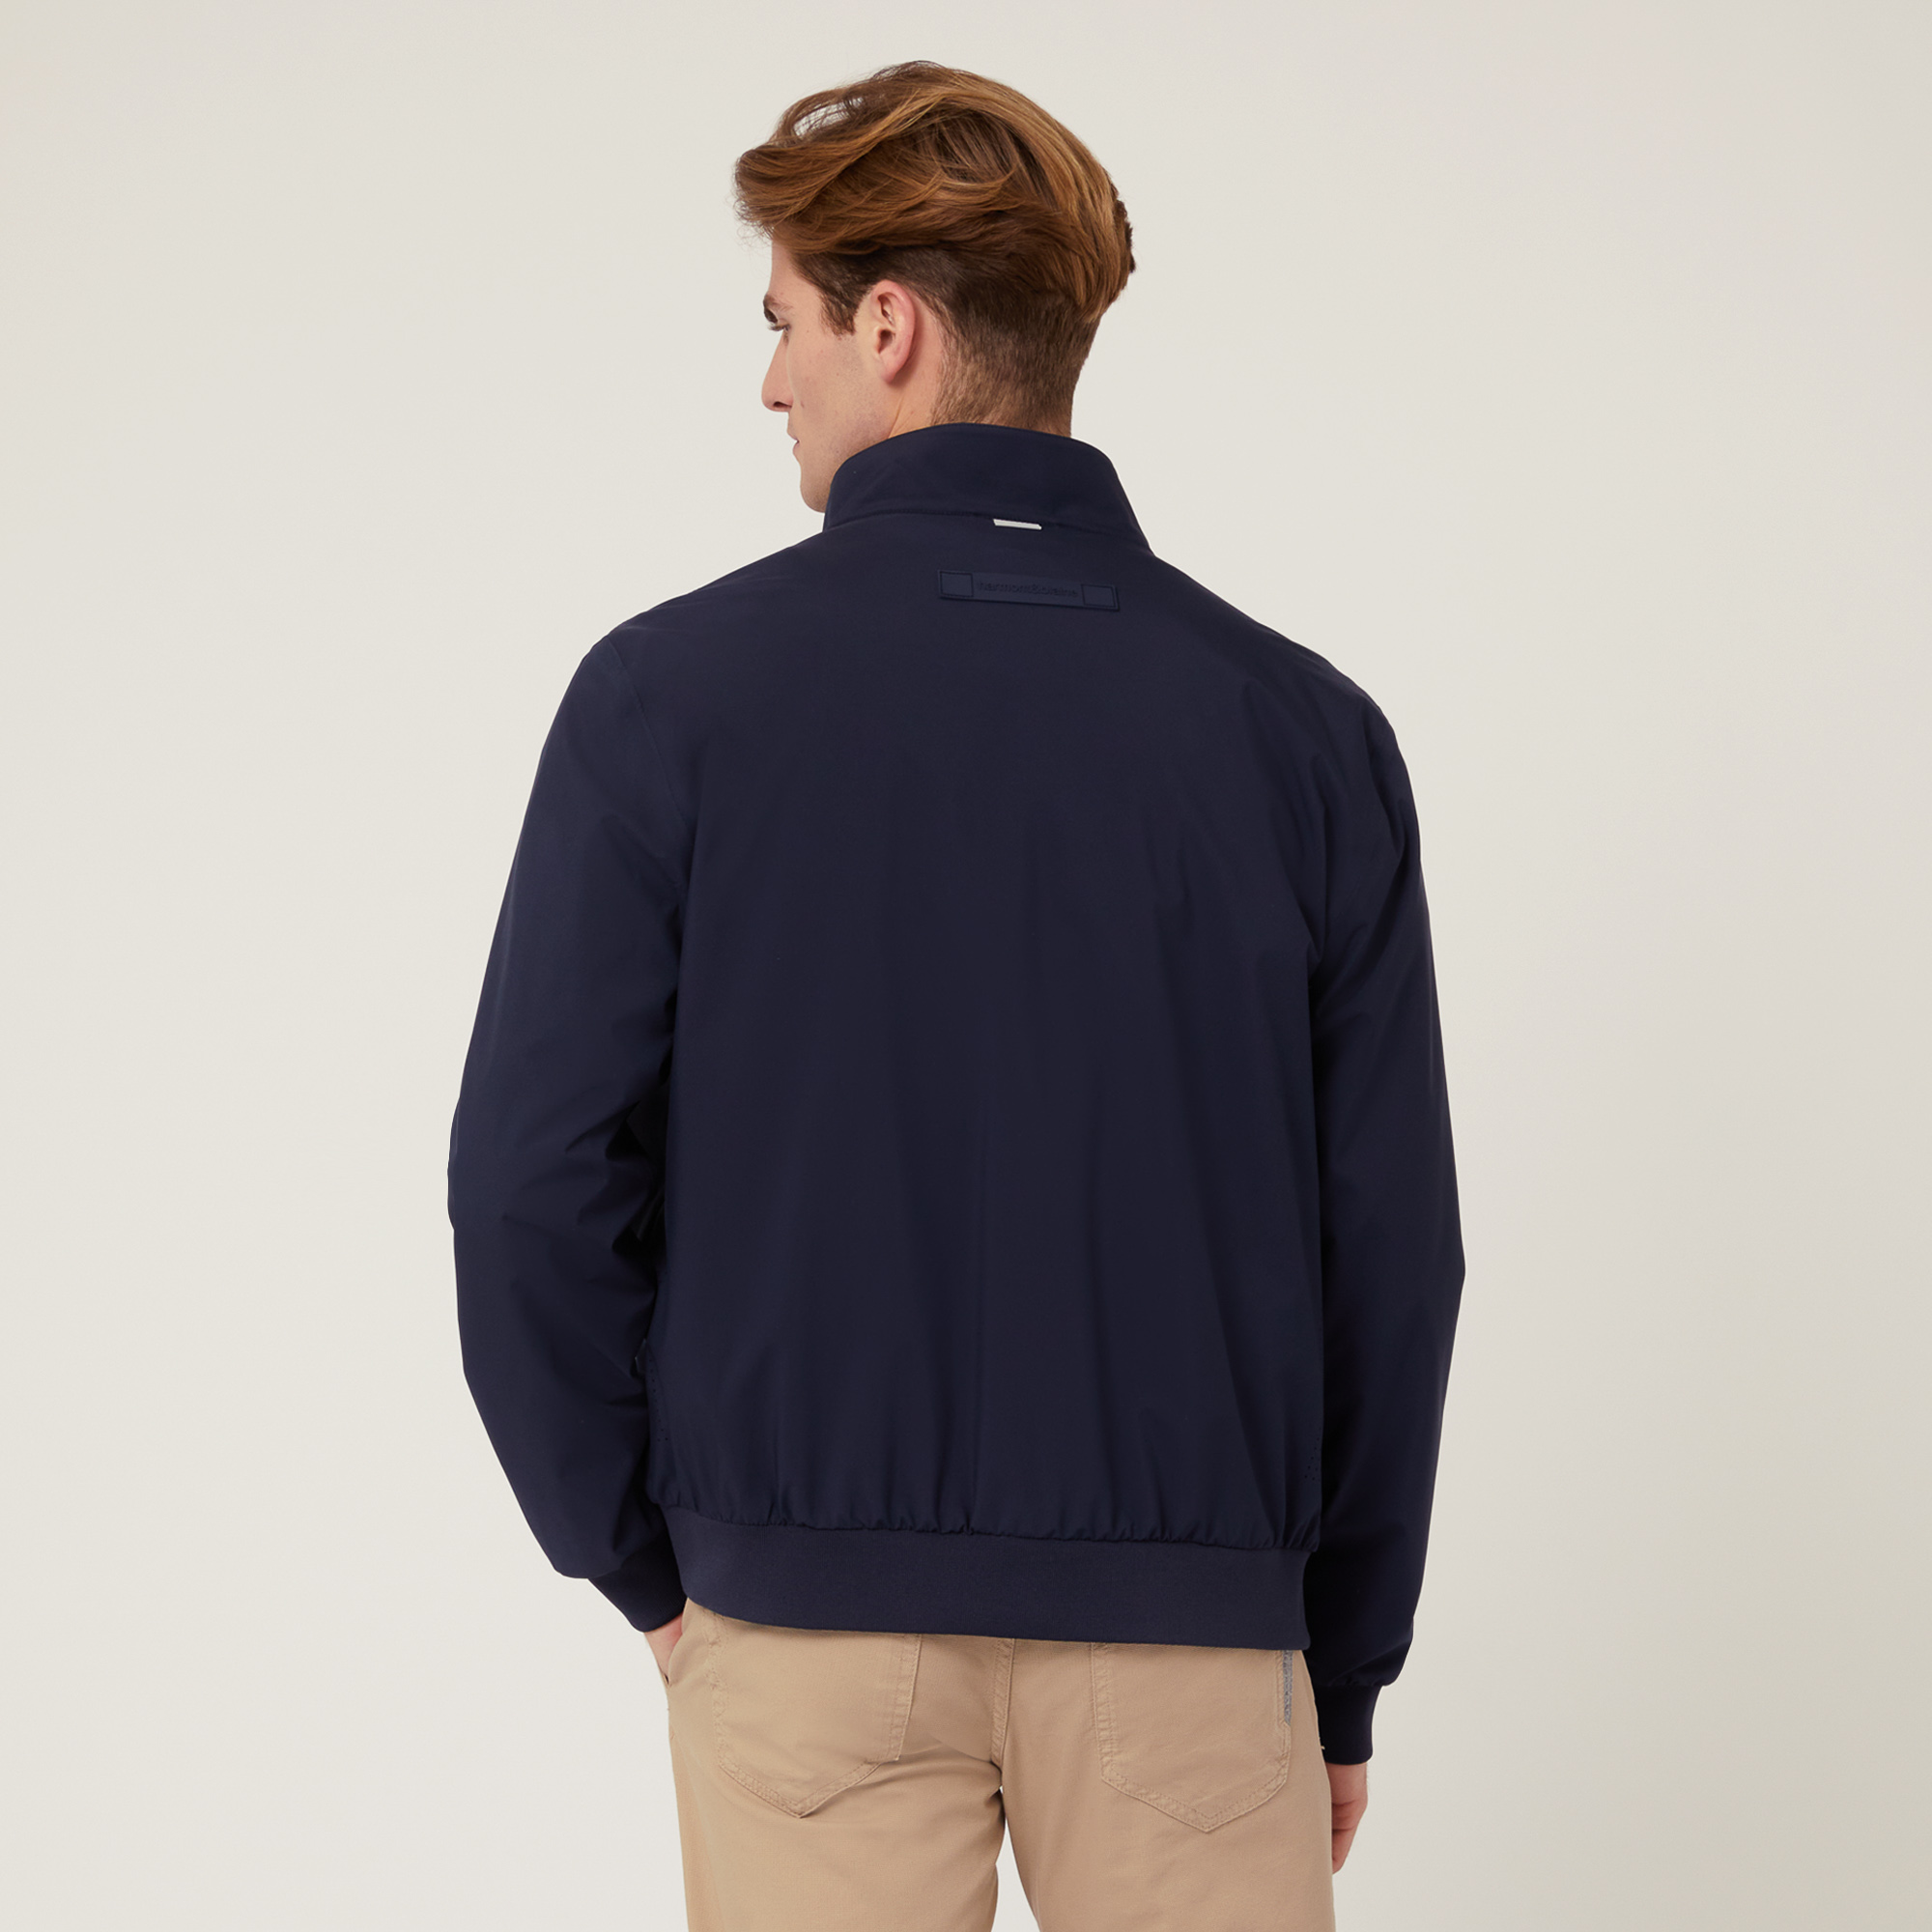 Softshell Jacket, Blue, large image number 1